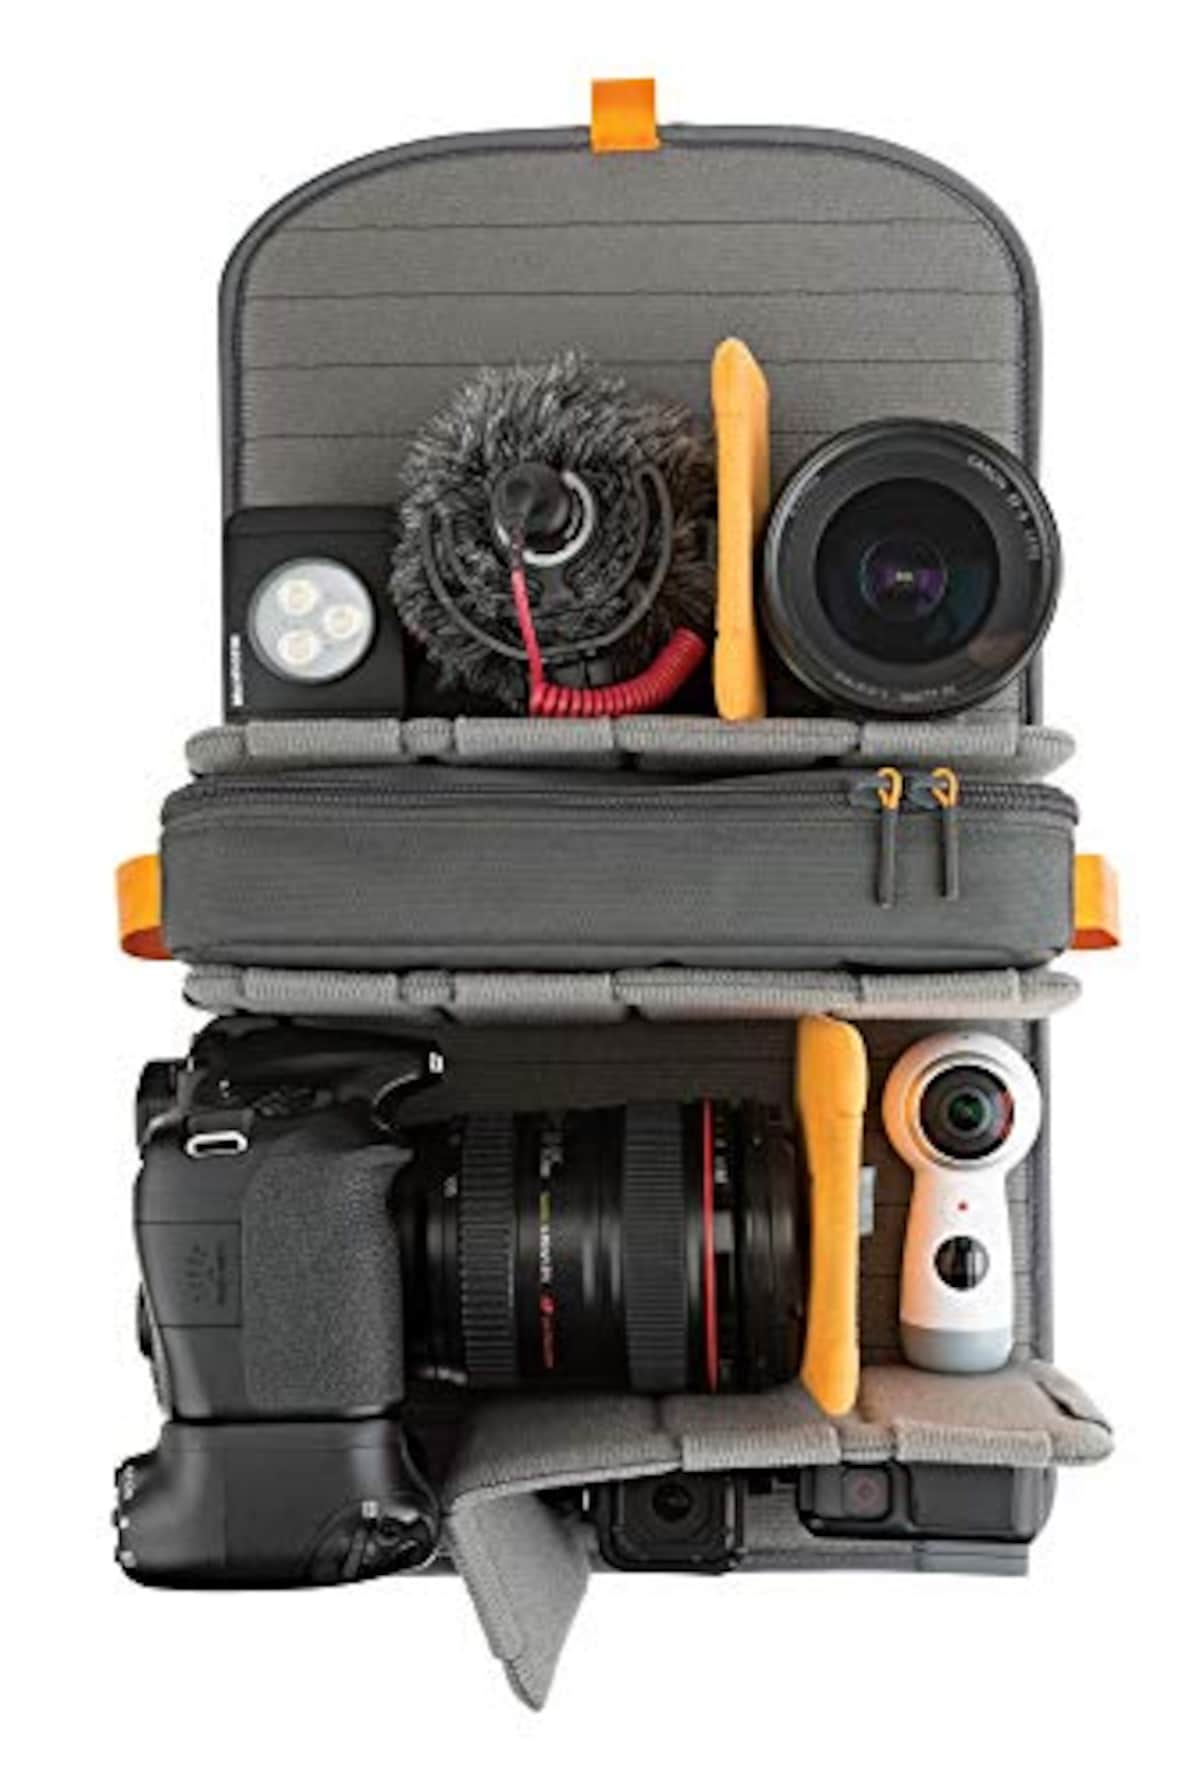  [Lowepro] カメラリュック フリーライン メンズ ブラック 48.7cm×29.3cm×20.8cm画像10 